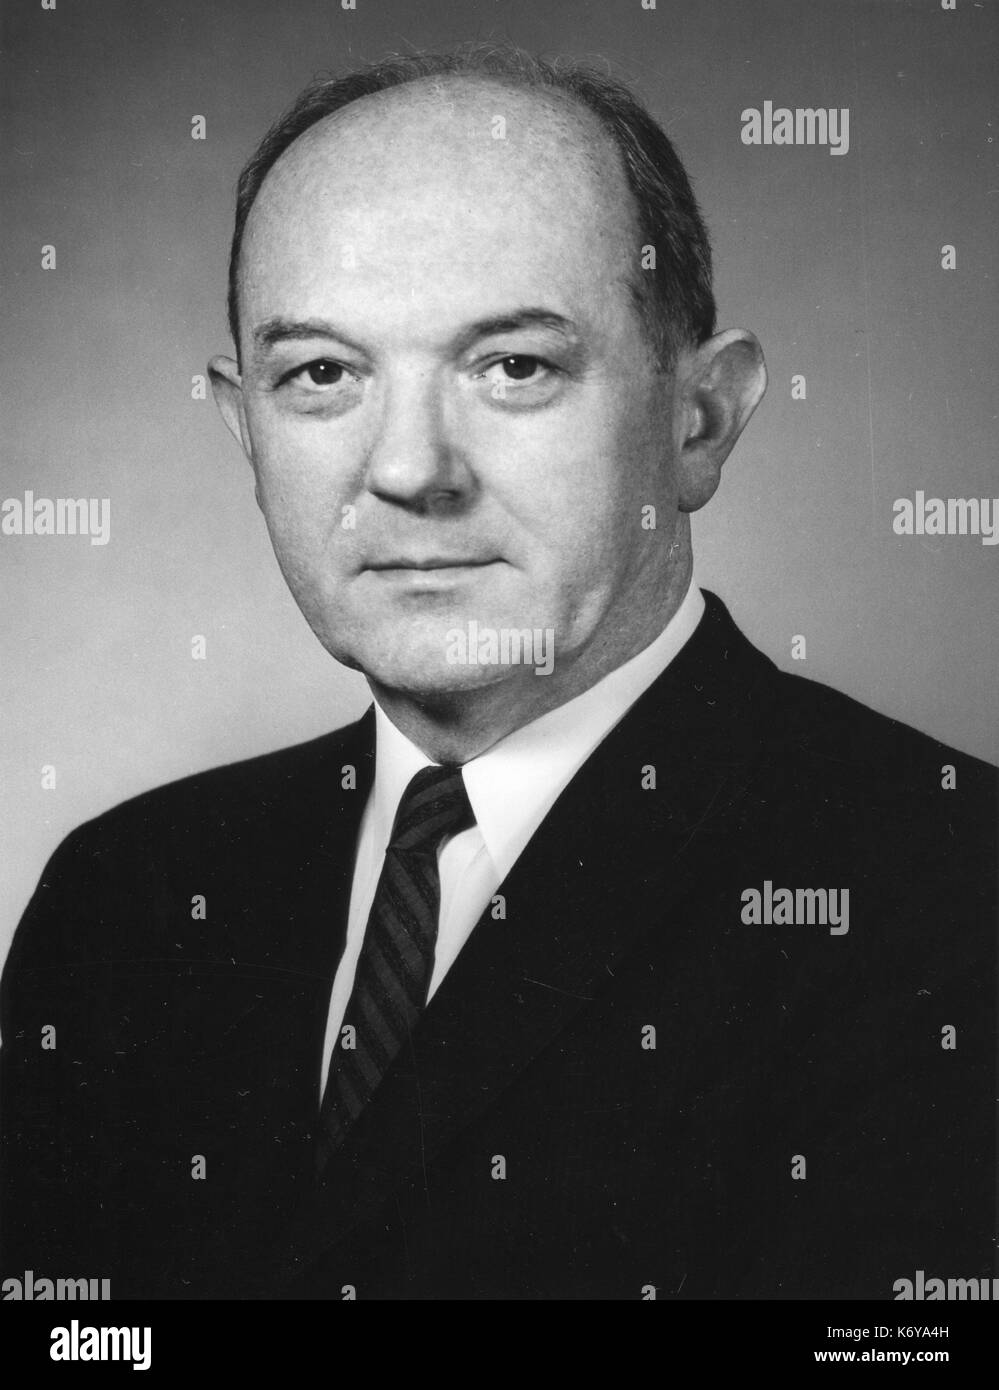 Ritratto ufficiale del Segretario di Stato statunitense Dean Rusk. Washington, DC, 1965. Foto Stock